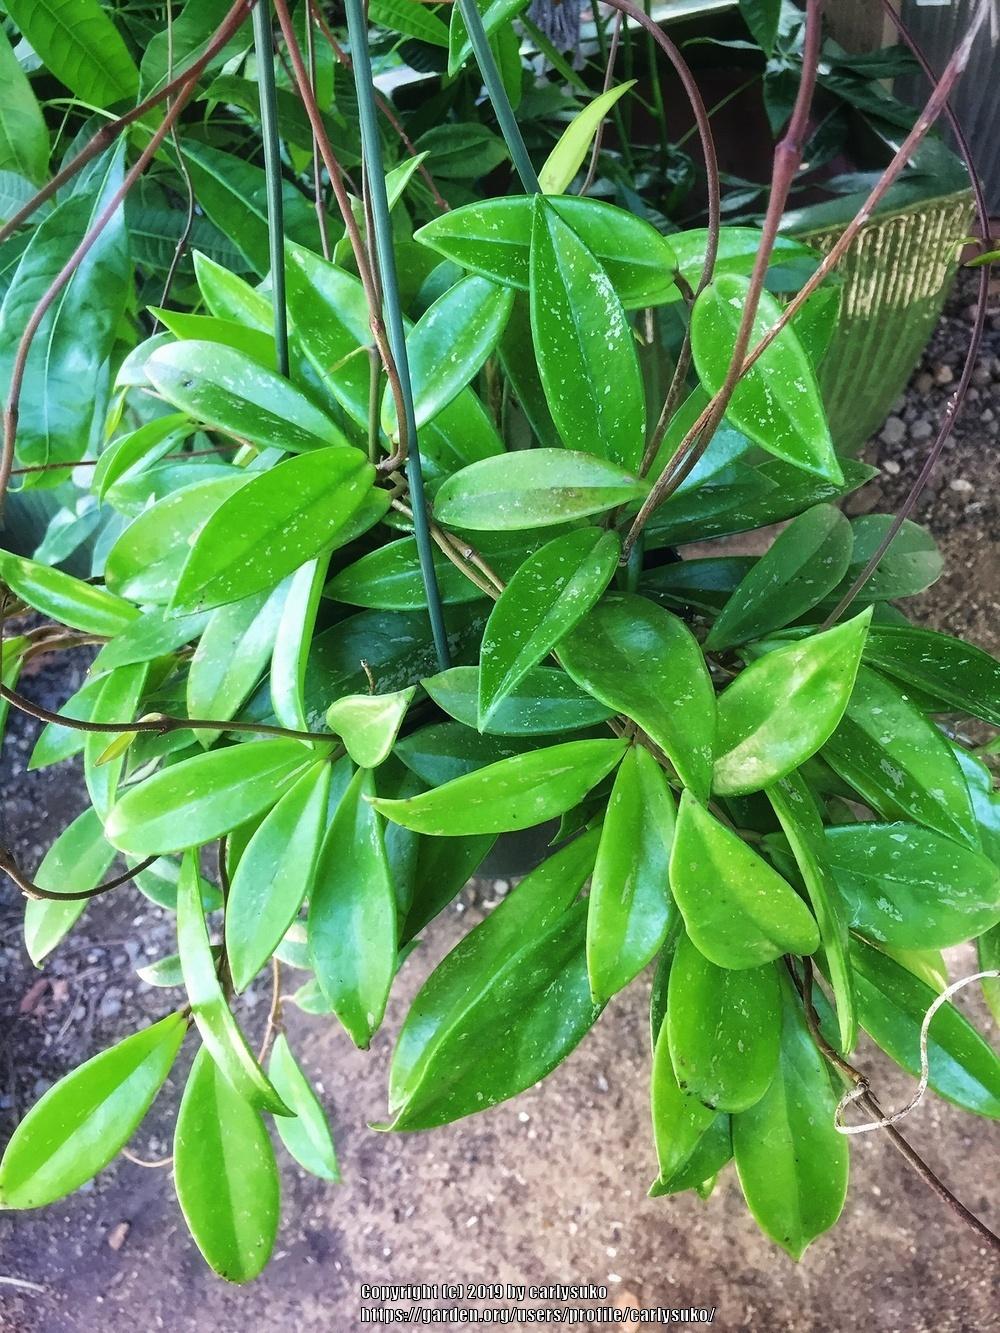 Photo of Wax Plant (Hoya carnosa) uploaded by carlysuko